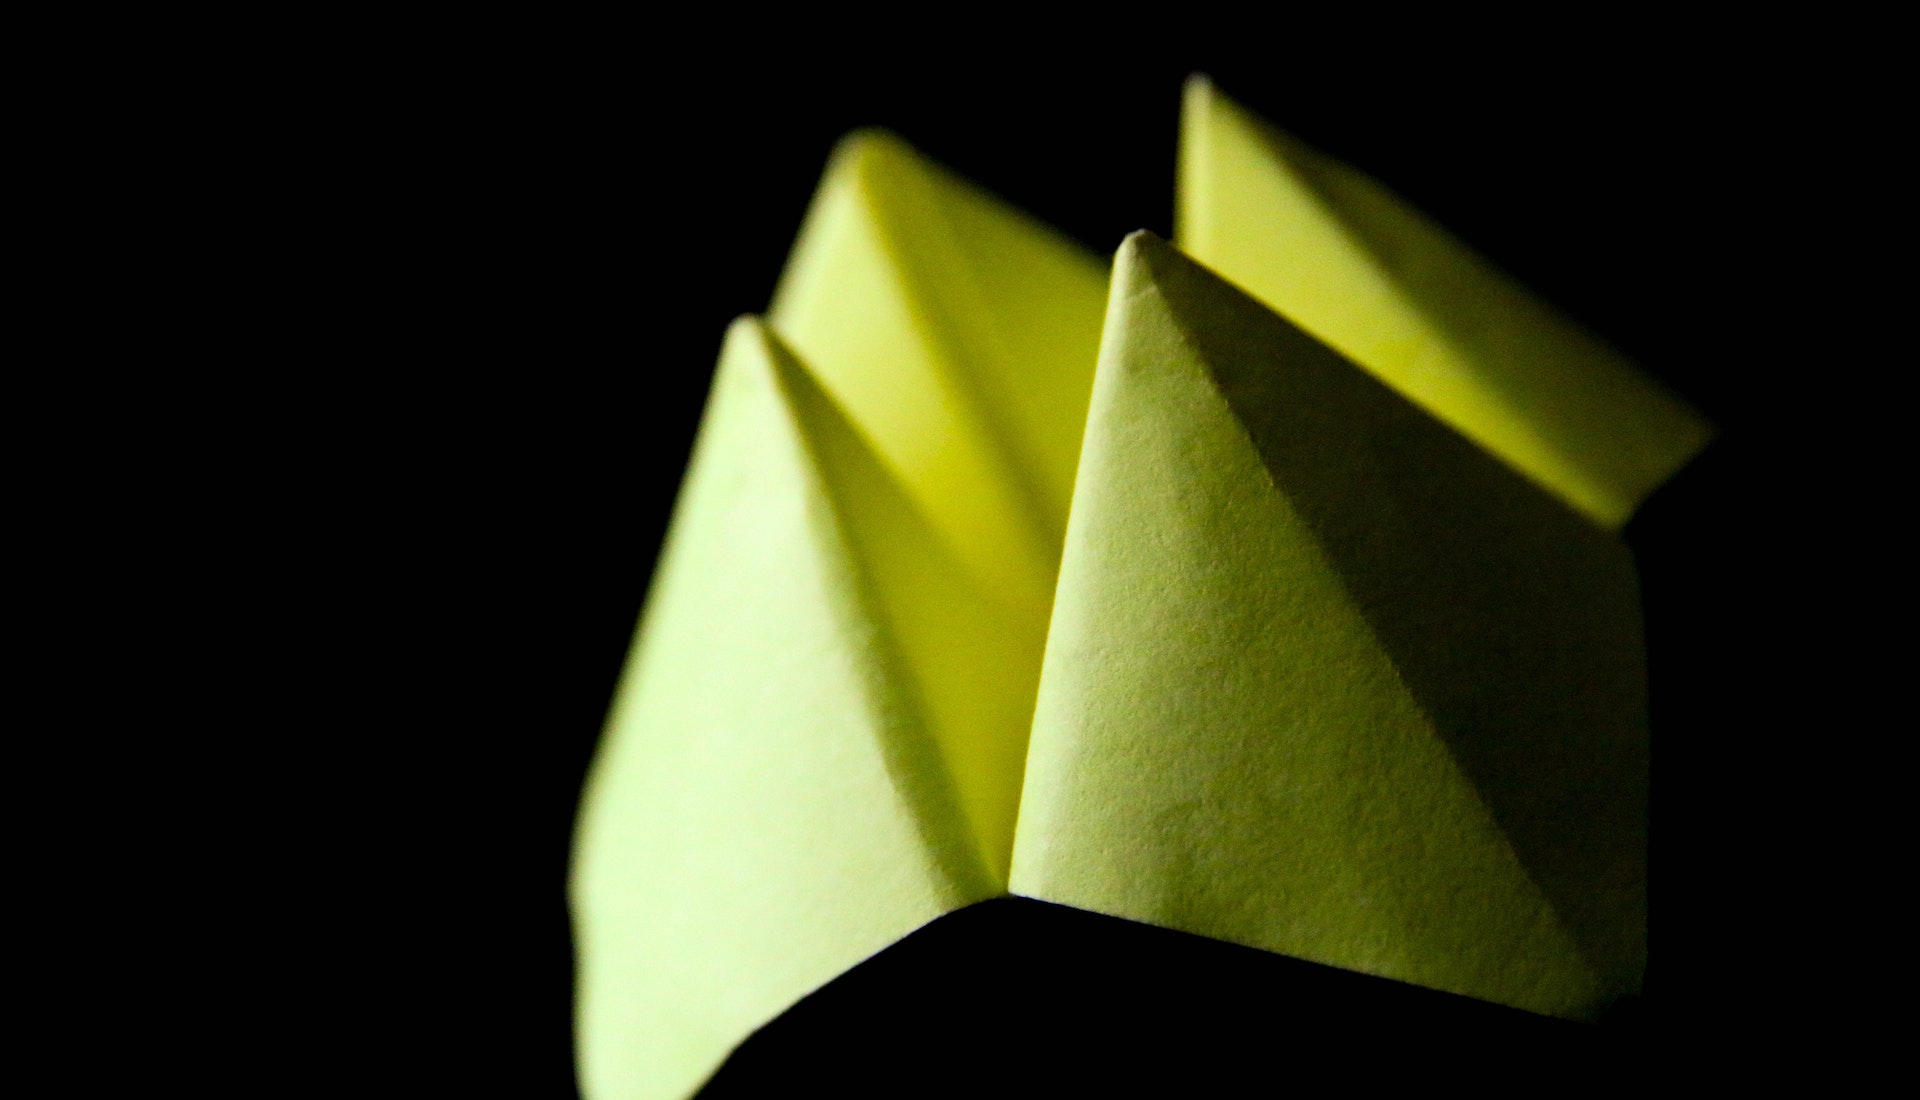 origami fortune teller